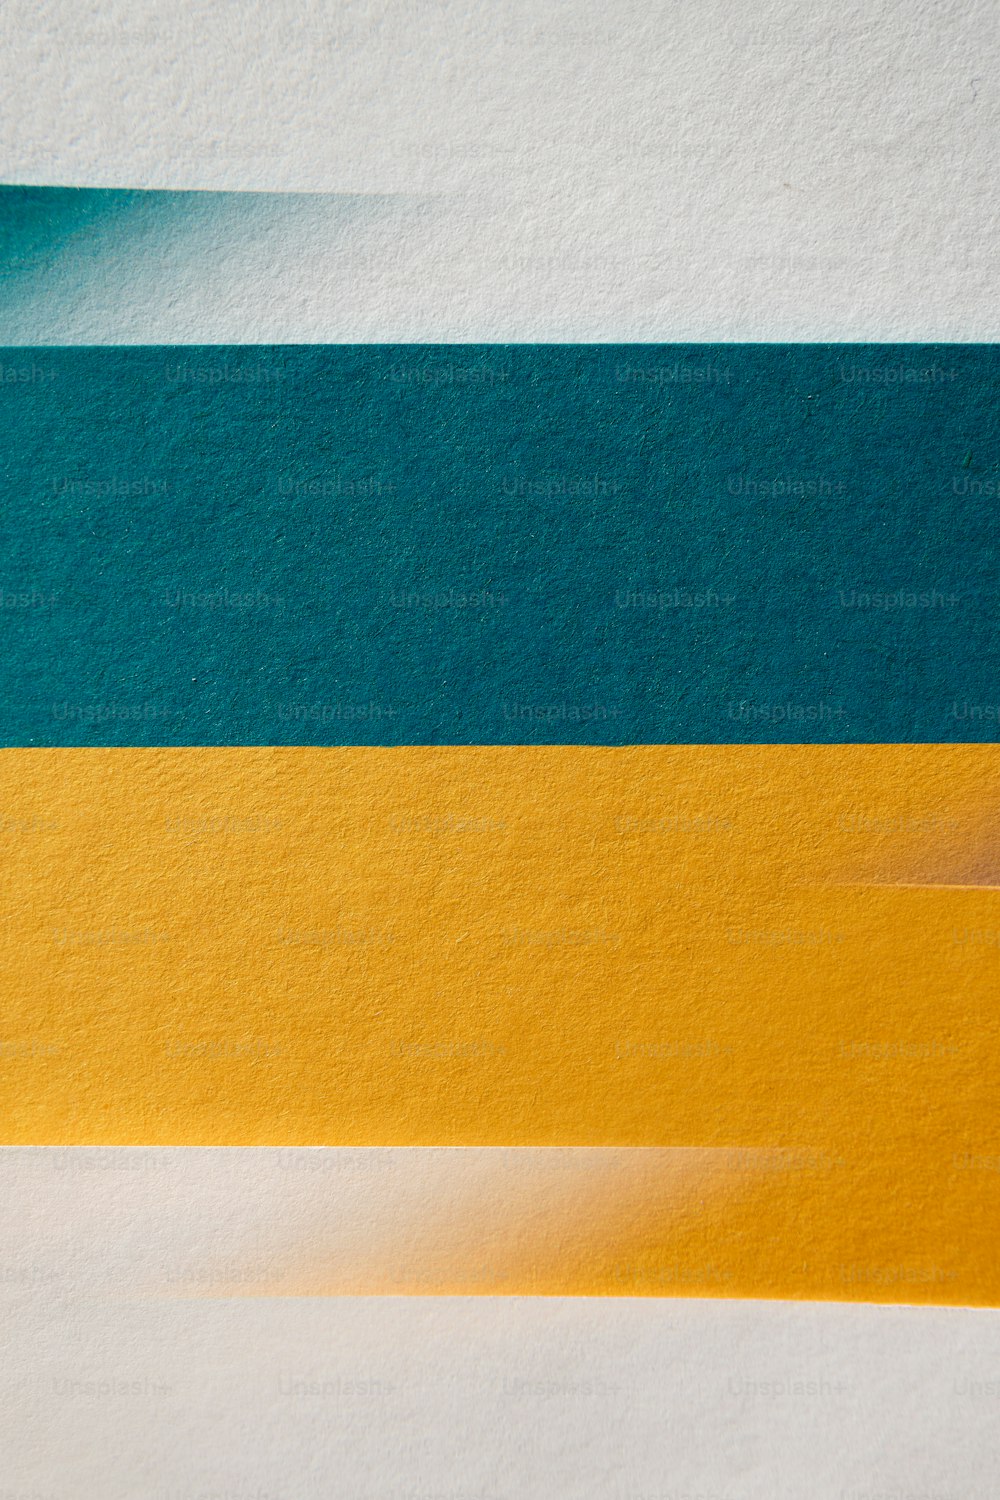 eine Nahaufnahme eines Blattes Papier mit gelben und blauen Streifen